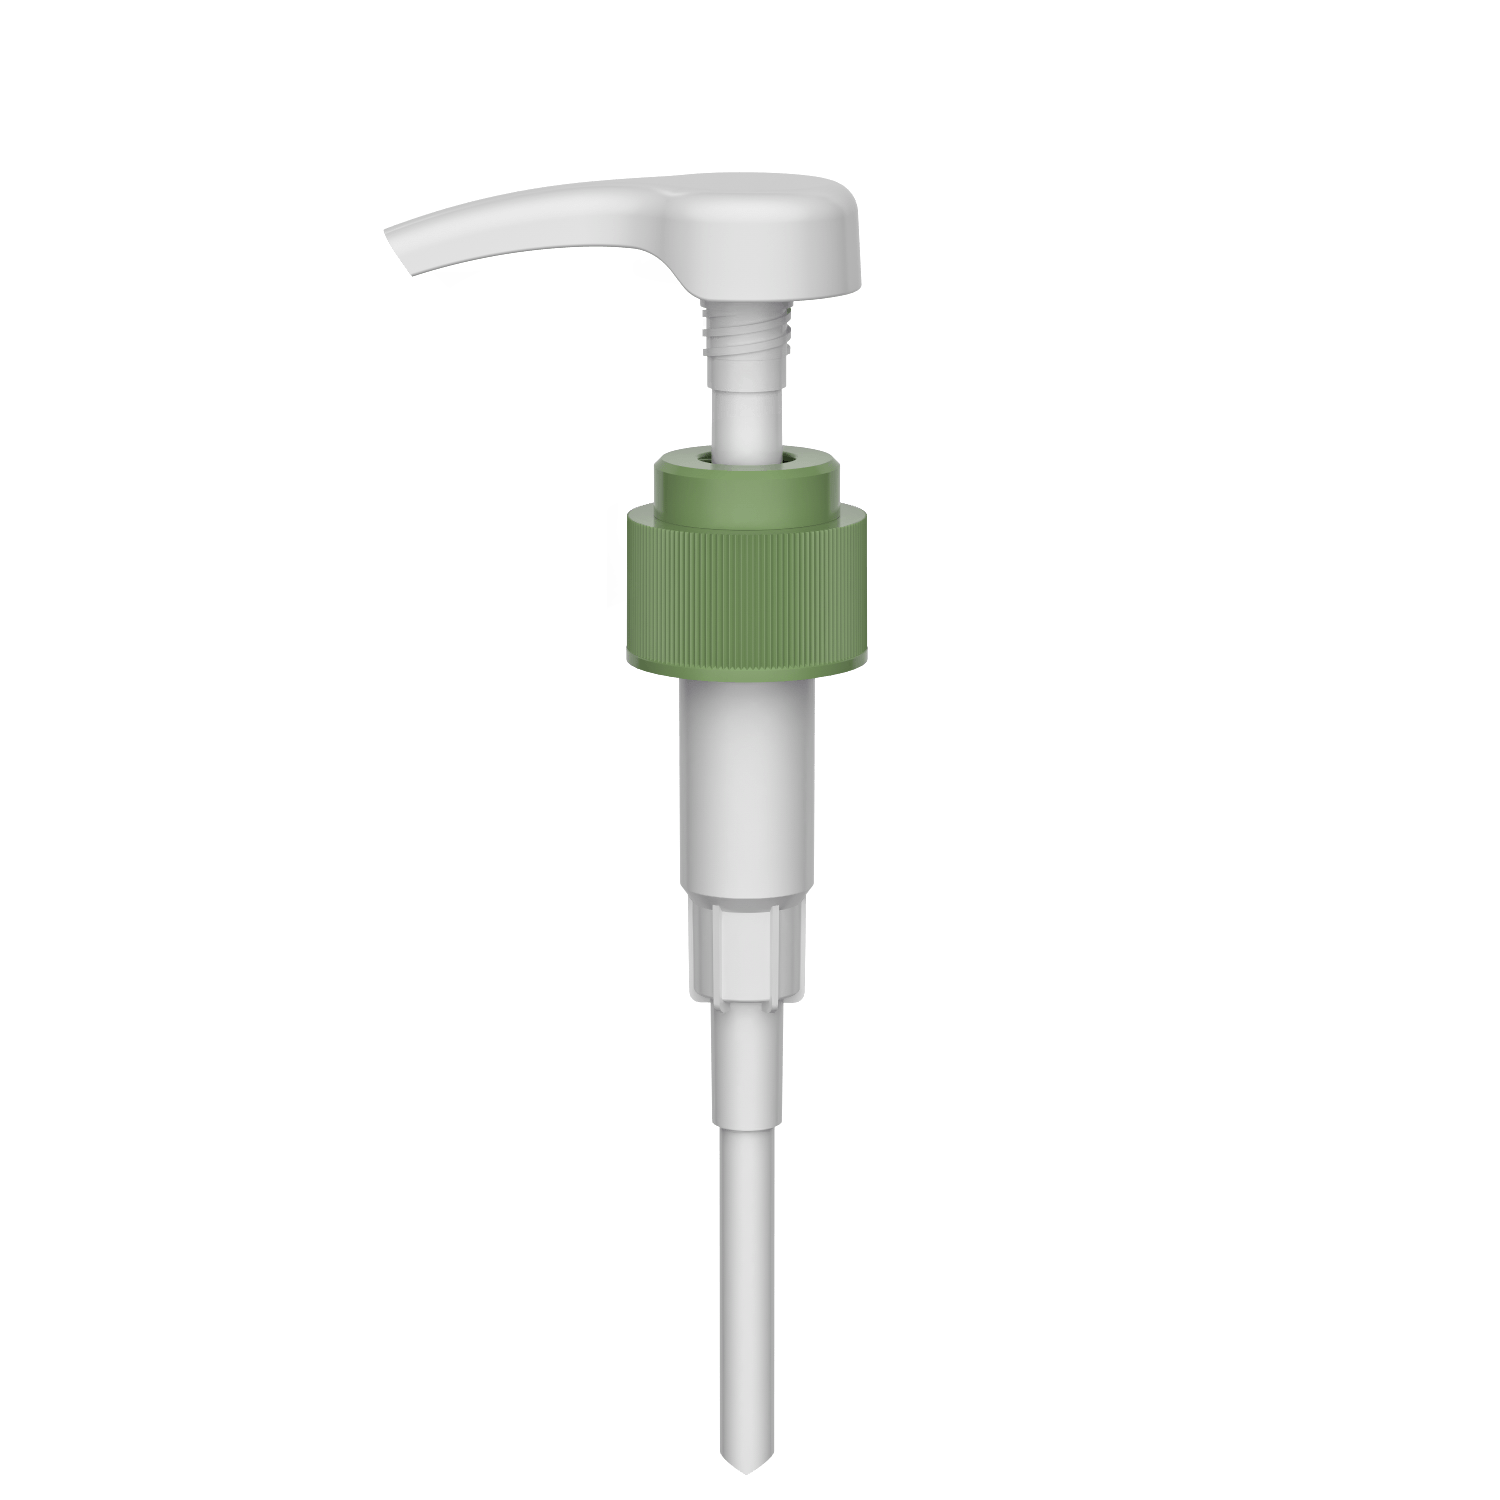 HD-608D 28/410 liquid high dosage washing shampoo output dispenser 3.5-4.0CC lotion pump